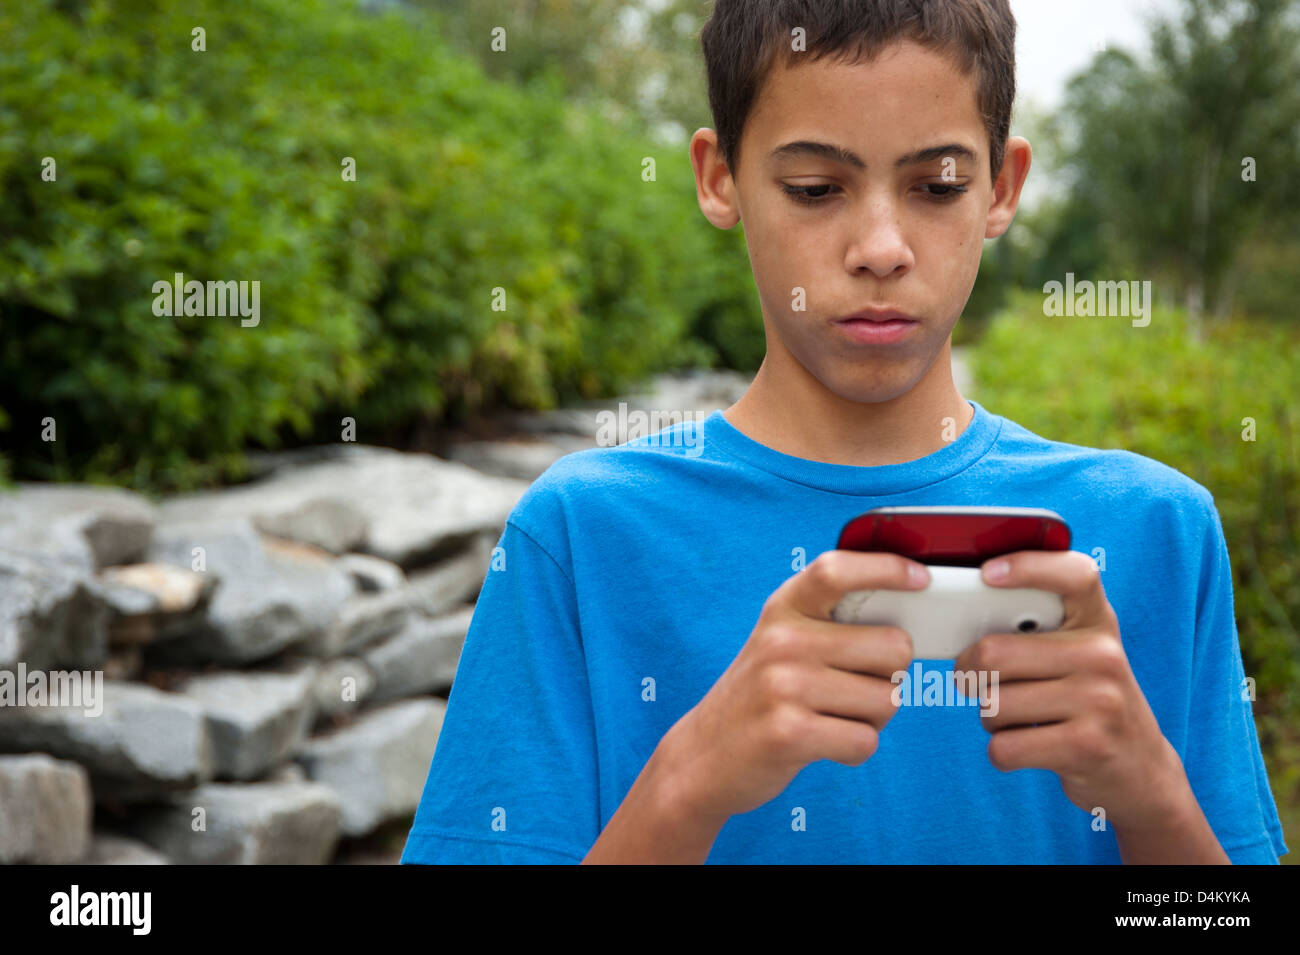 Jeune garçon des messages sur son téléphone cellulaire Banque D'Images